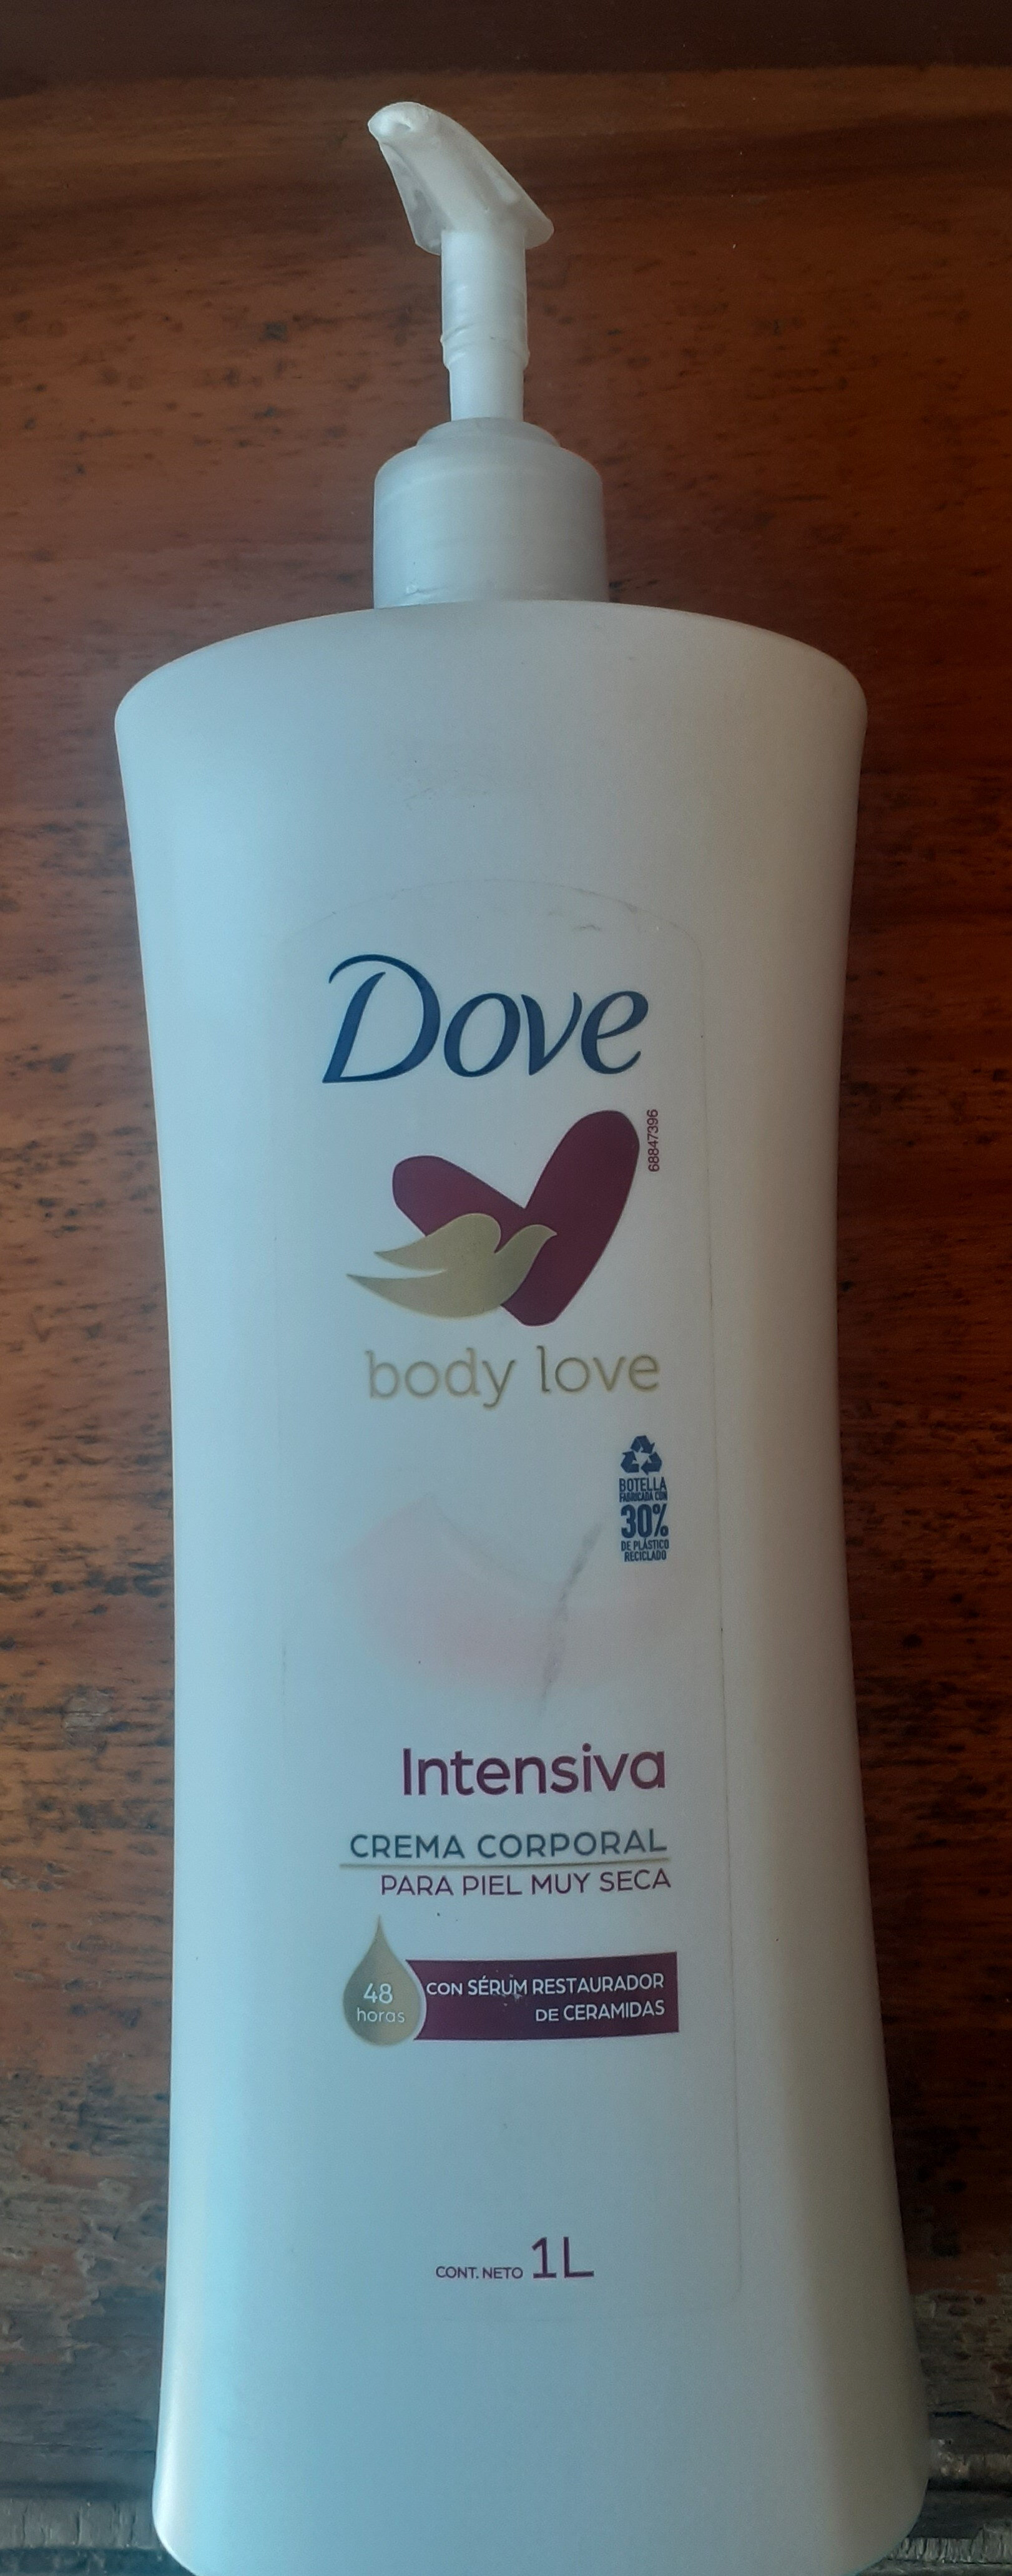 Dove Body Love Intensiva - מוצר - es